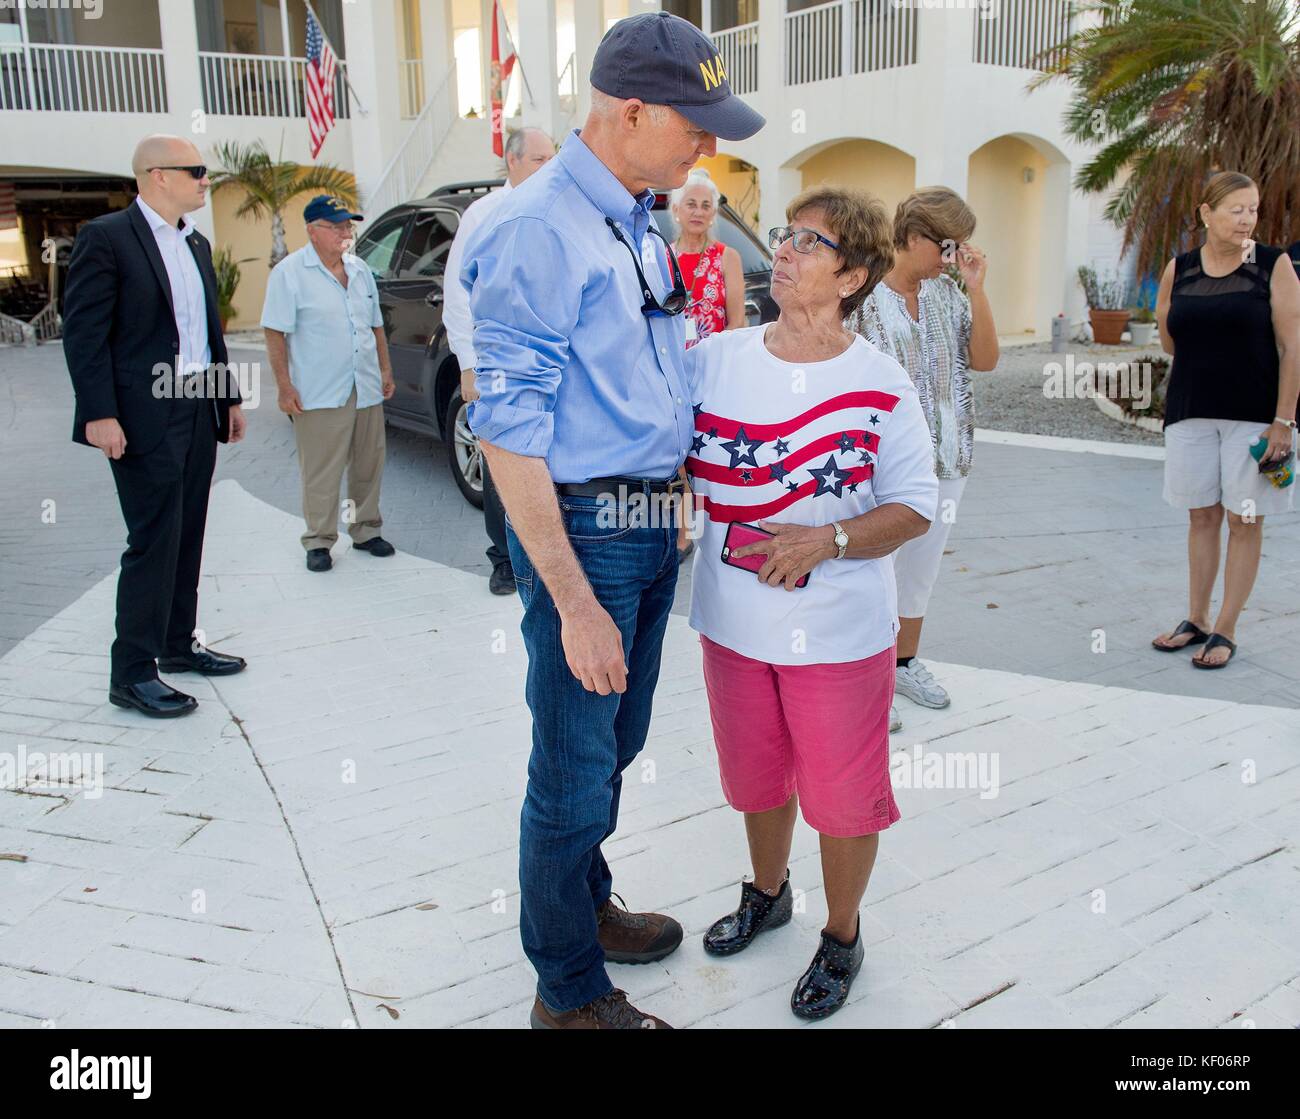 Negli Stati Uniti il governatore della Florida rick scott visite residenti in Florida durante il ripristino di emergenza dopo l'uragano irma settembre 25, 2017 in chiave cudjoe, Florida. Foto Stock